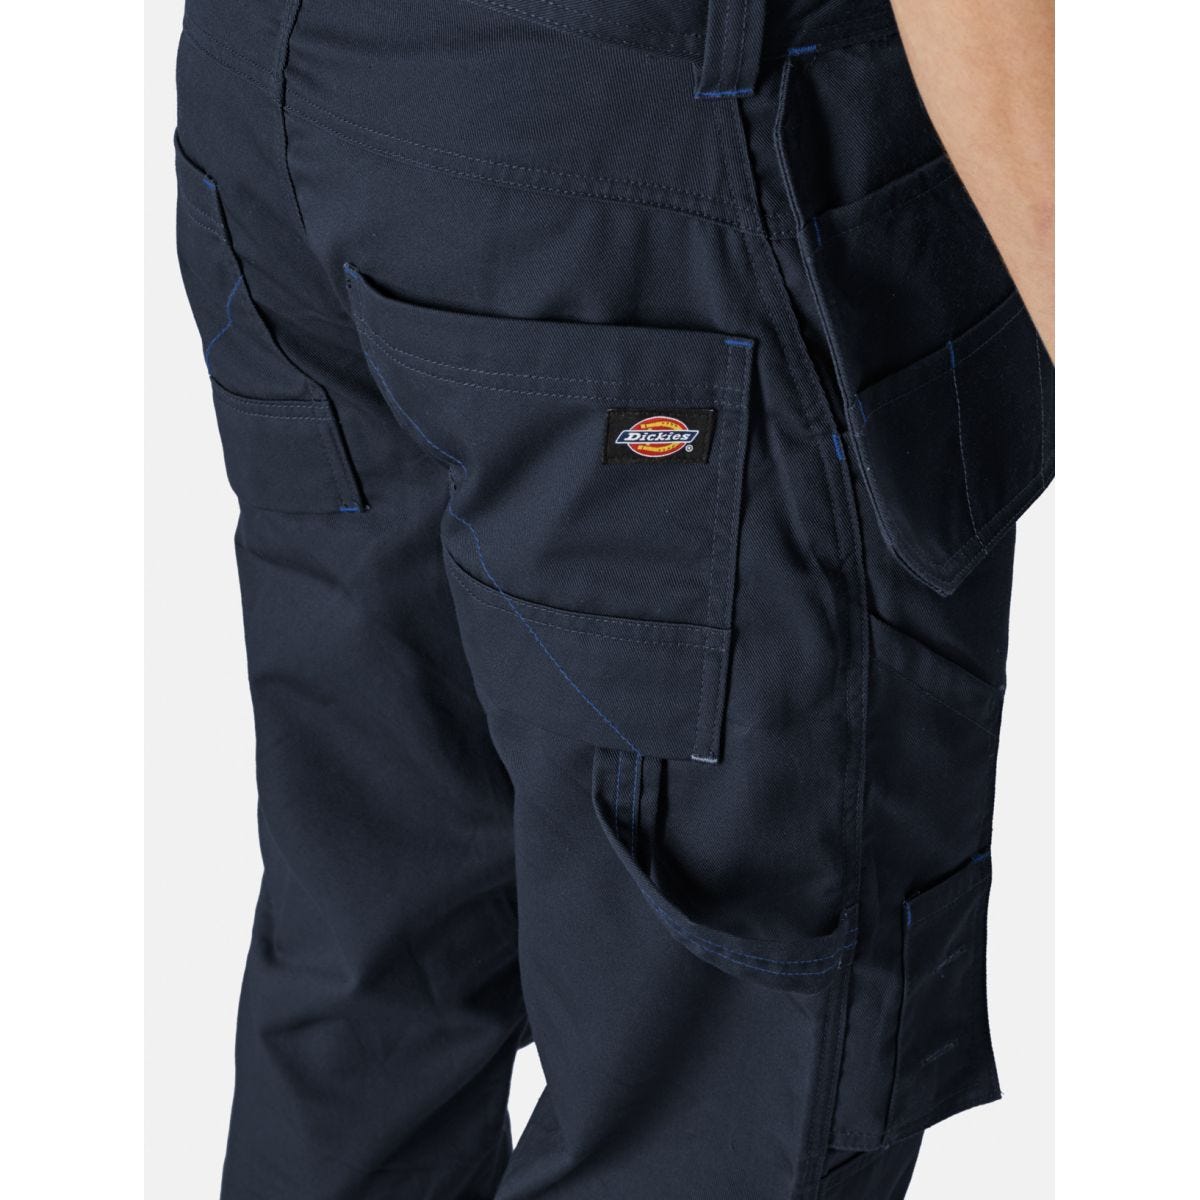 Pantalon Redhawk Pro Bleu marine - Dickies - Taille 38 3